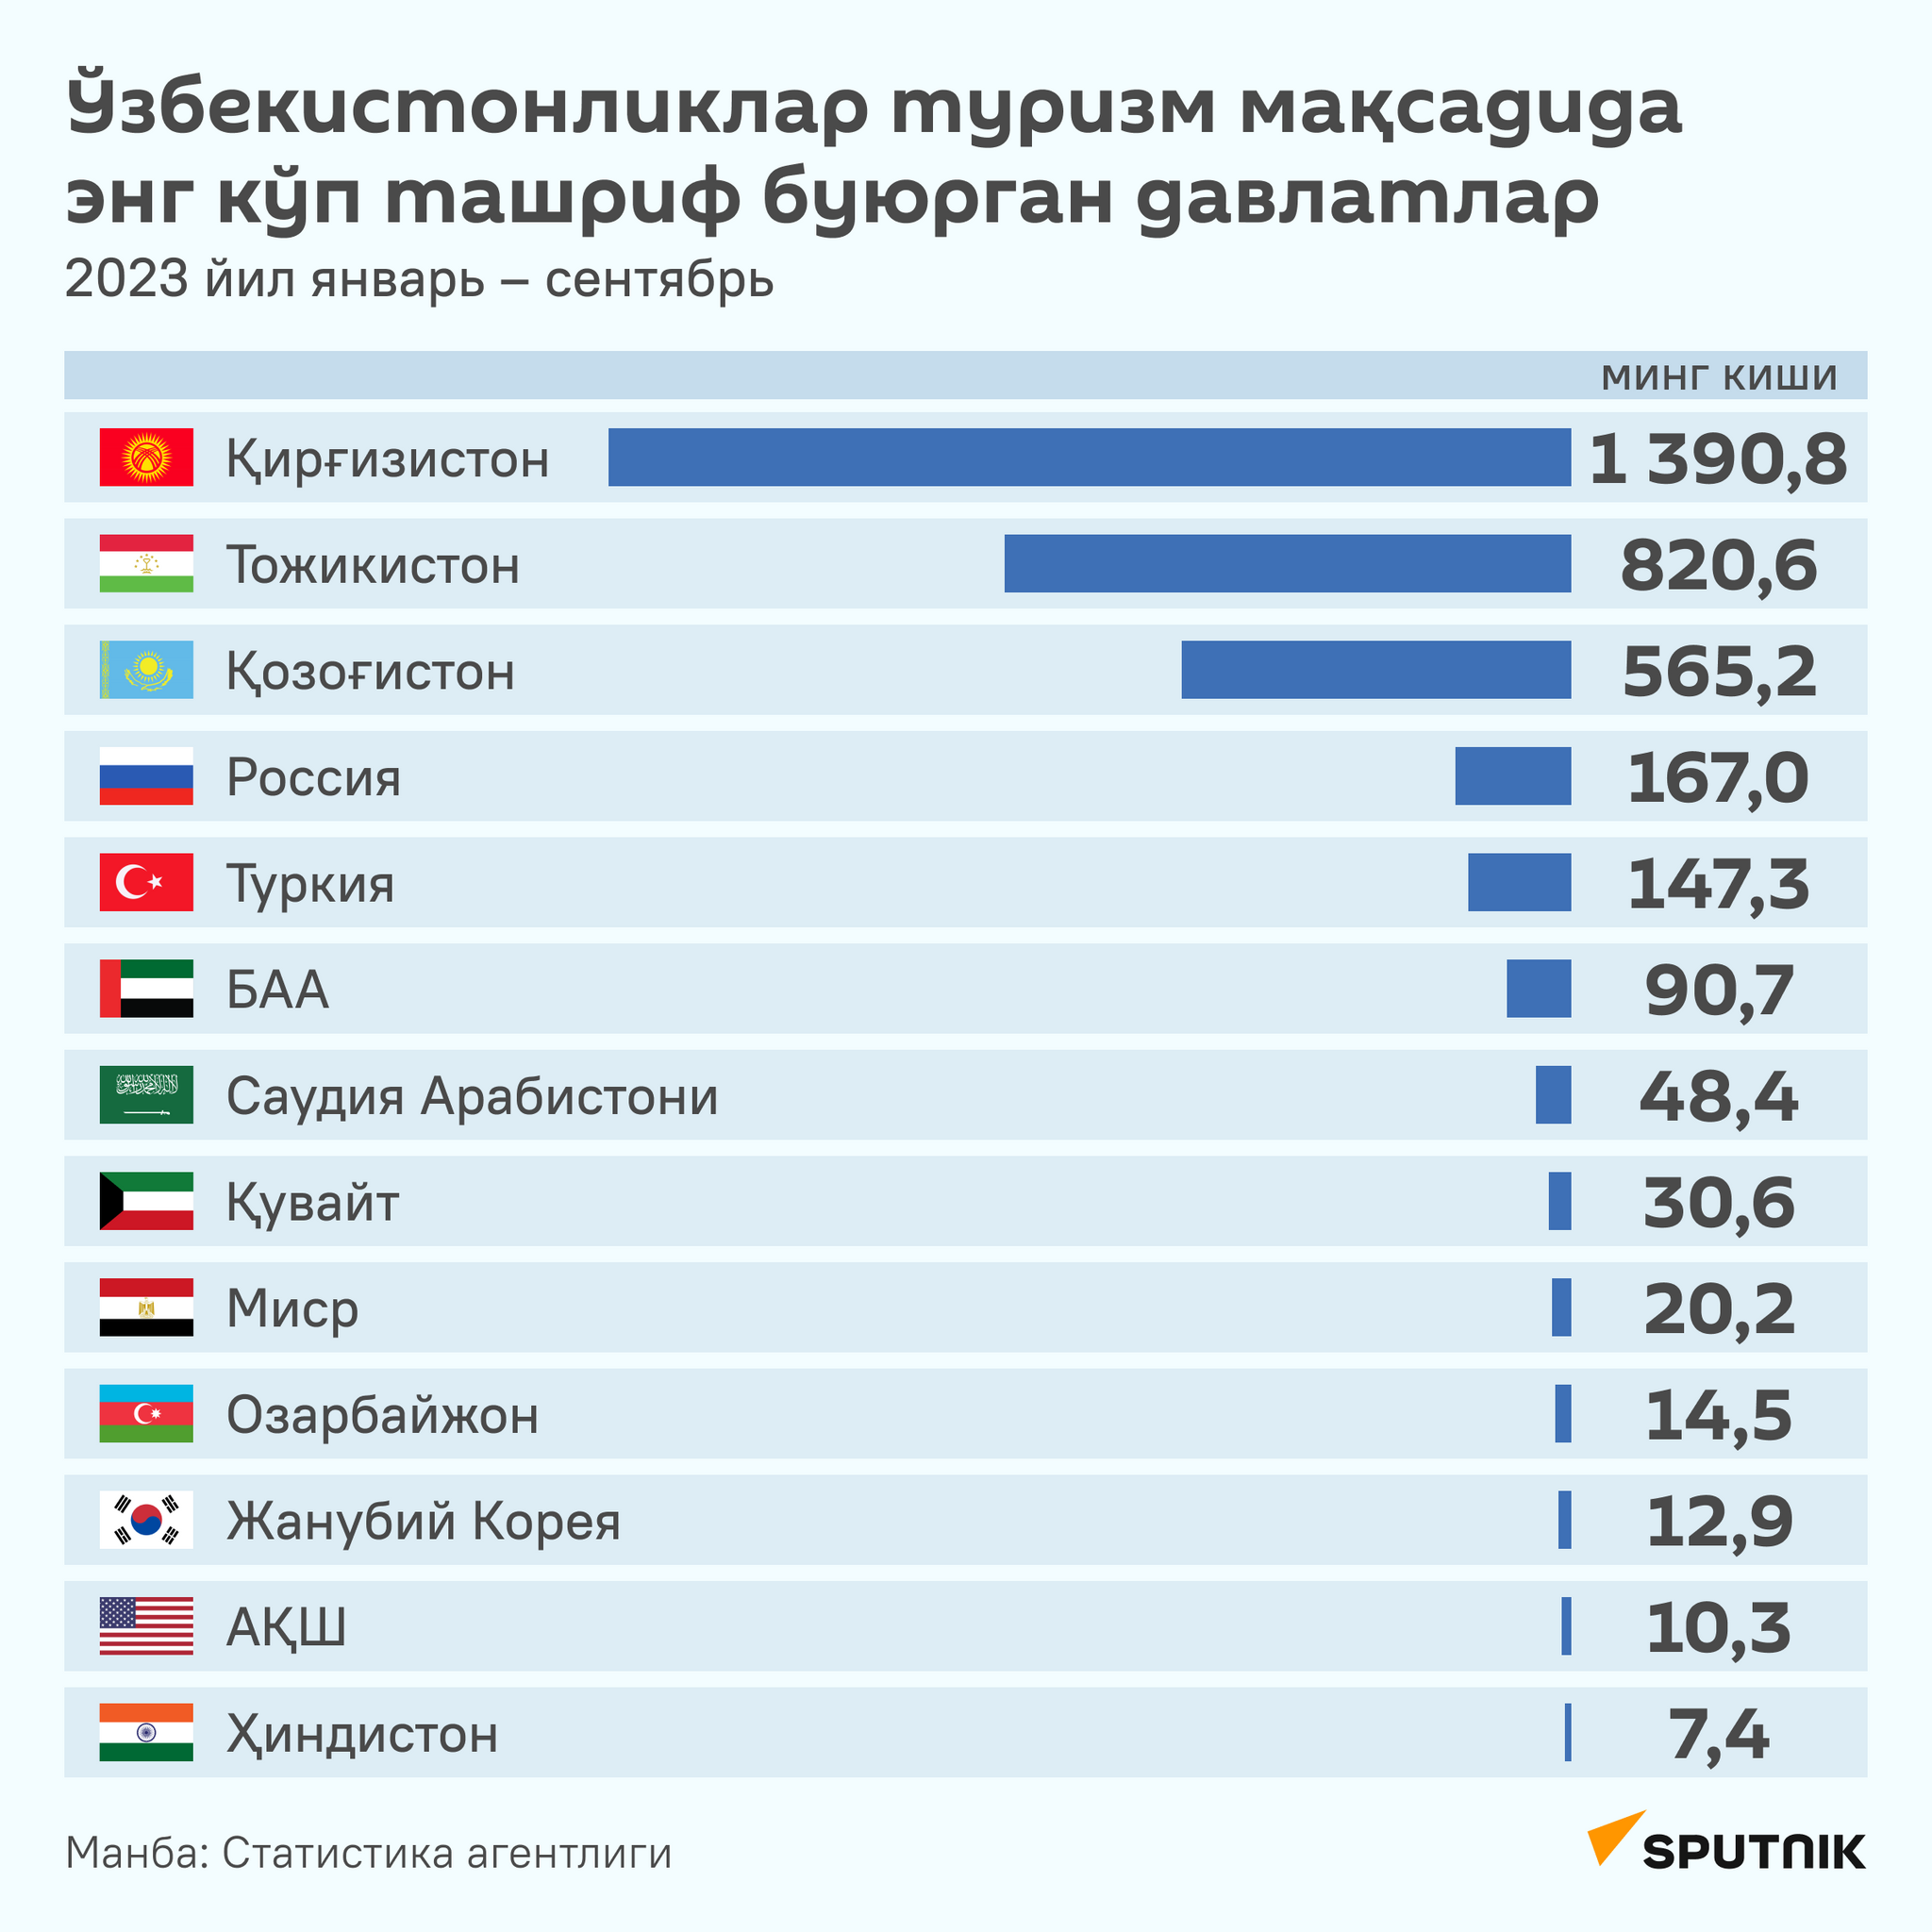 Какие страны узбекистанцы посещали в туристических целях больше всего? - Sputnik Ўзбекистон